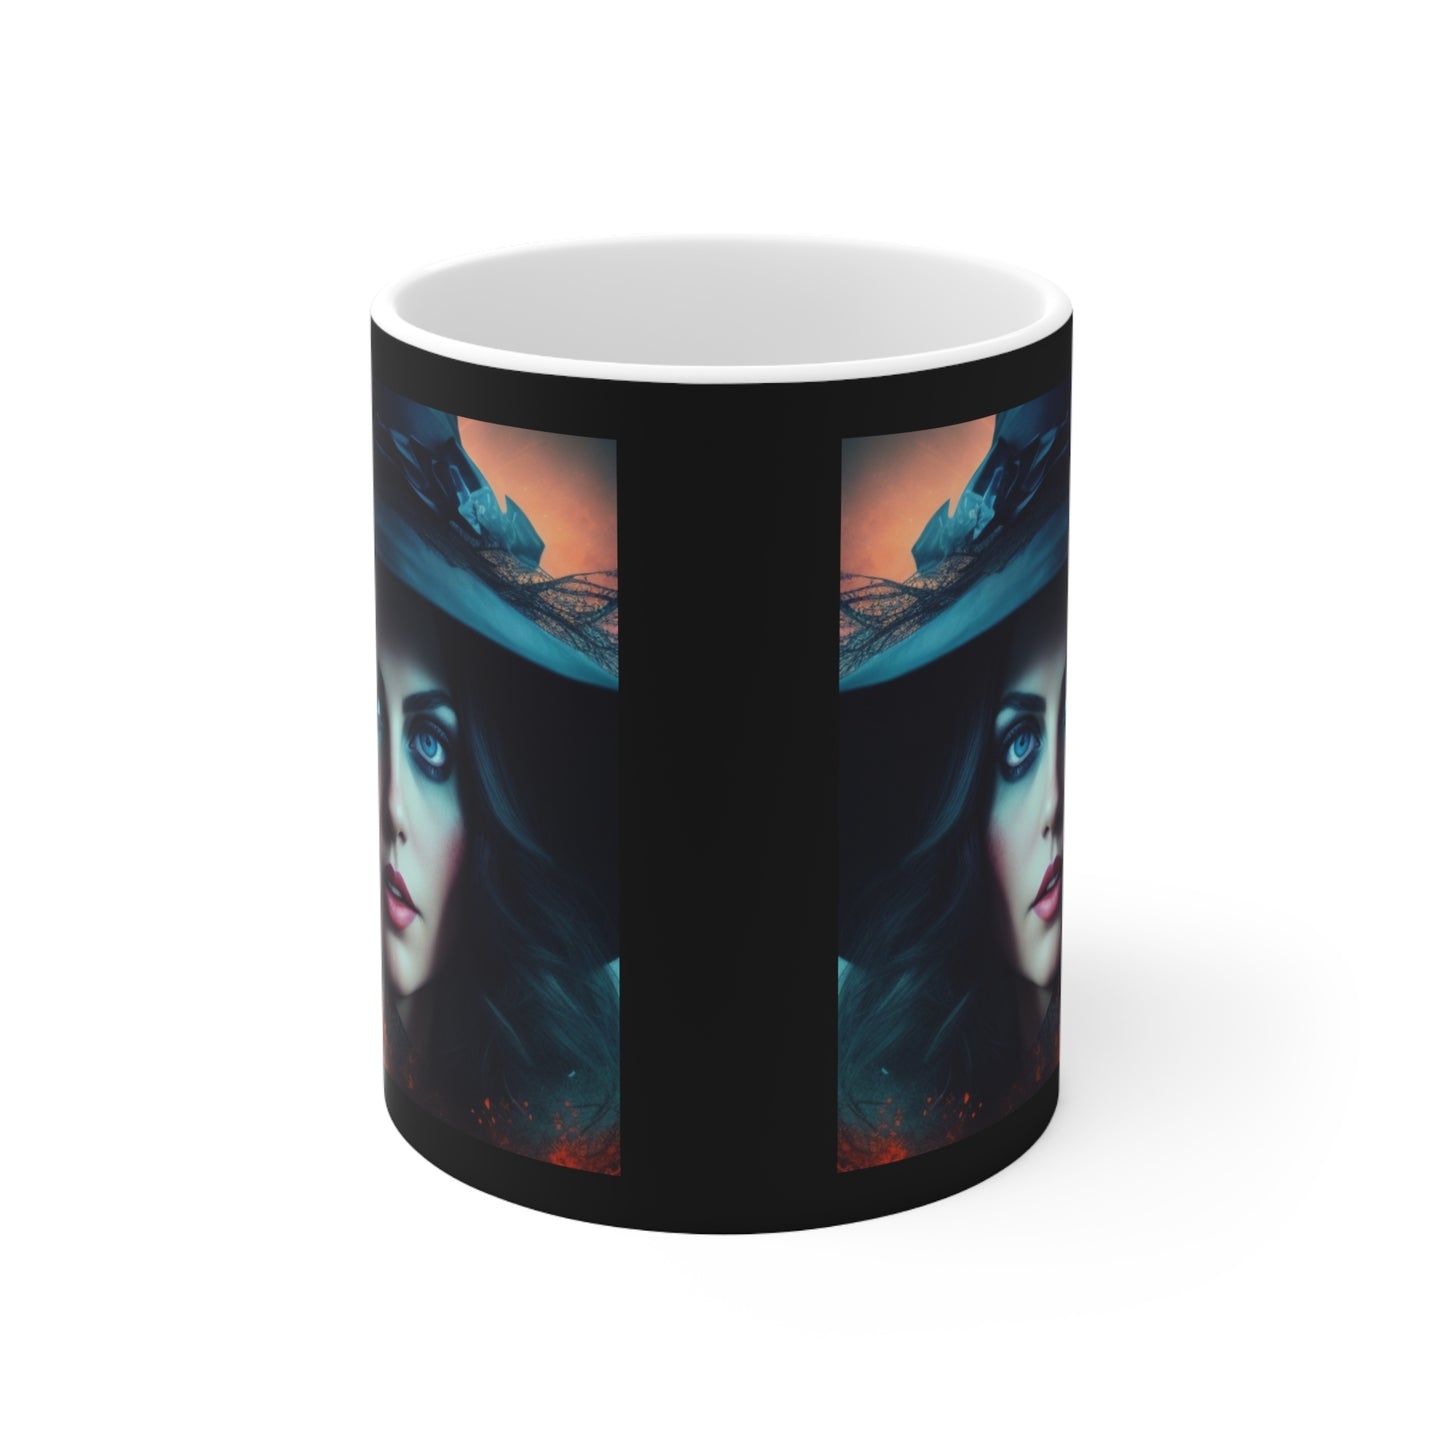 Ceramic Mug 11oz - Halloween Witch AI - 07